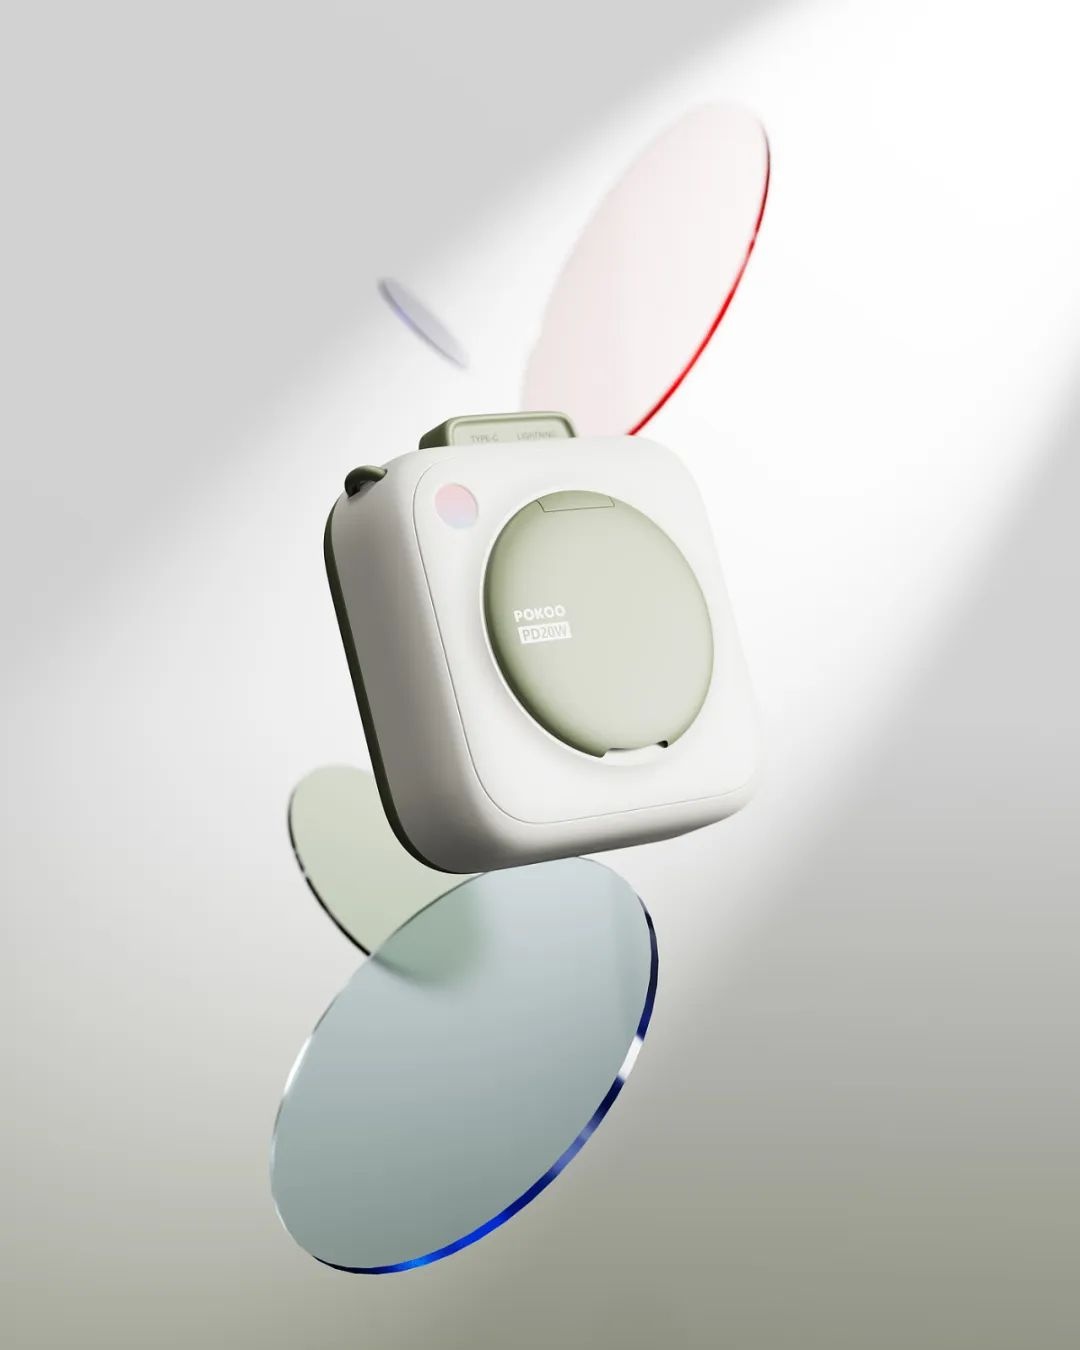 pokoo磁吸充电宝 设计：所思设计   pokoo是为年轻用户设计的mini磁吸充电宝。通过方和圆的组合，形成简洁的 ...